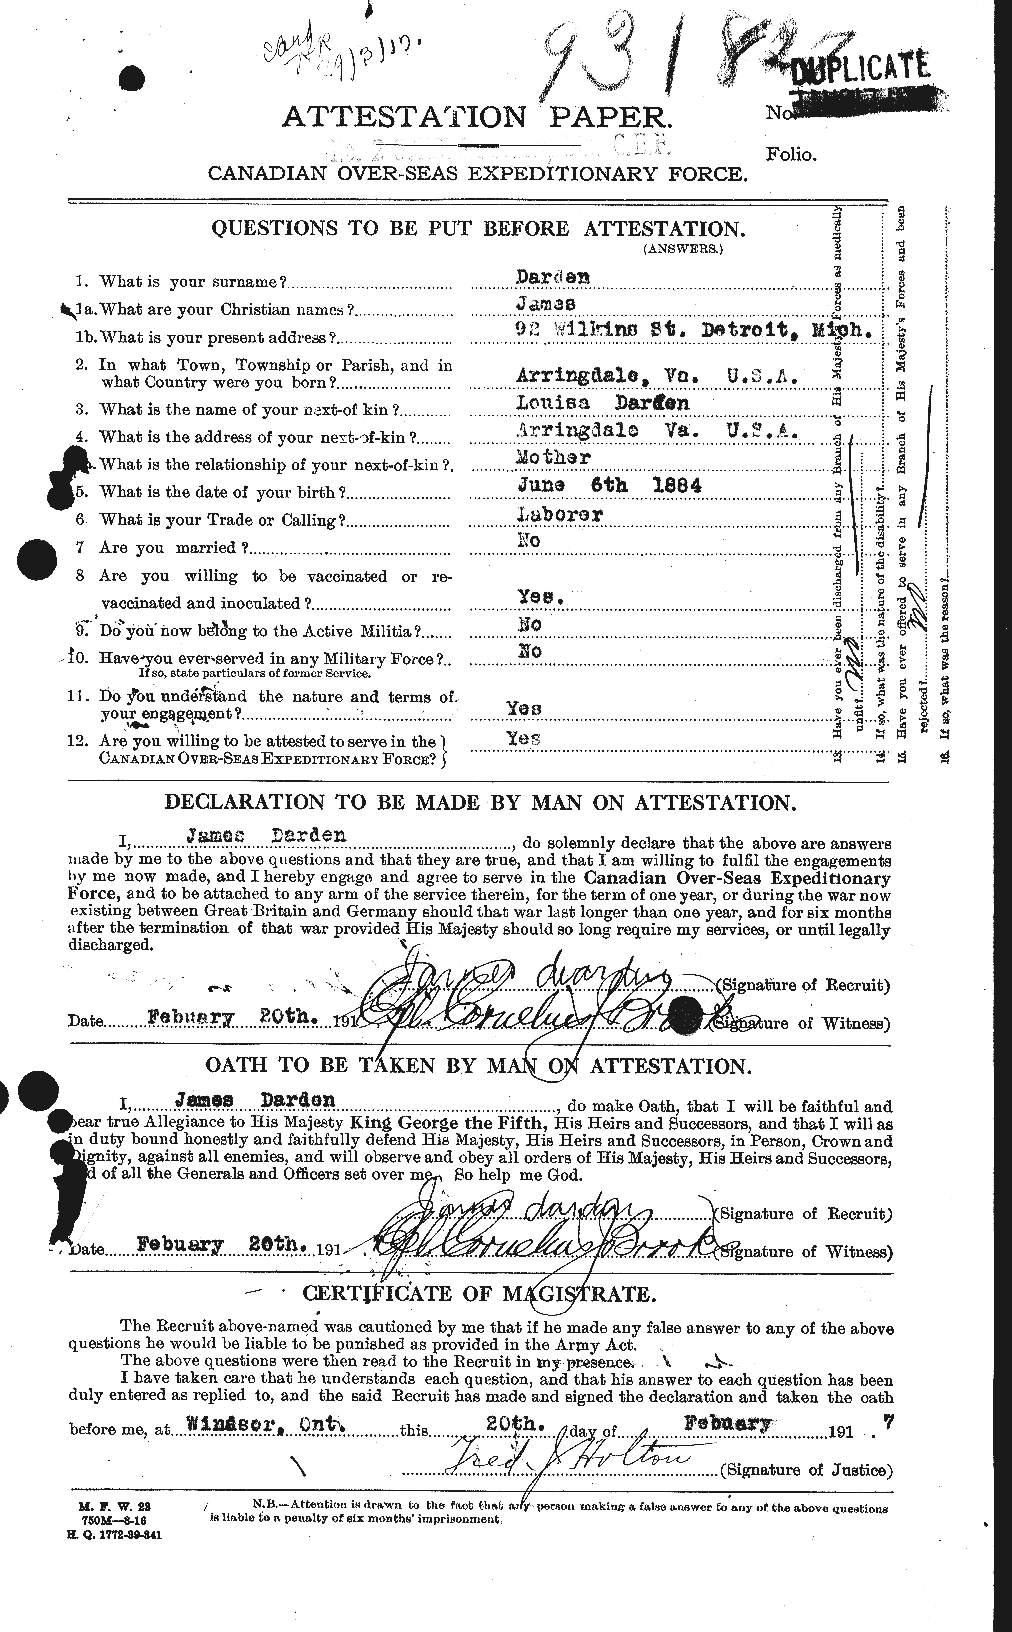 Dossiers du Personnel de la Première Guerre mondiale - CEC 280054a